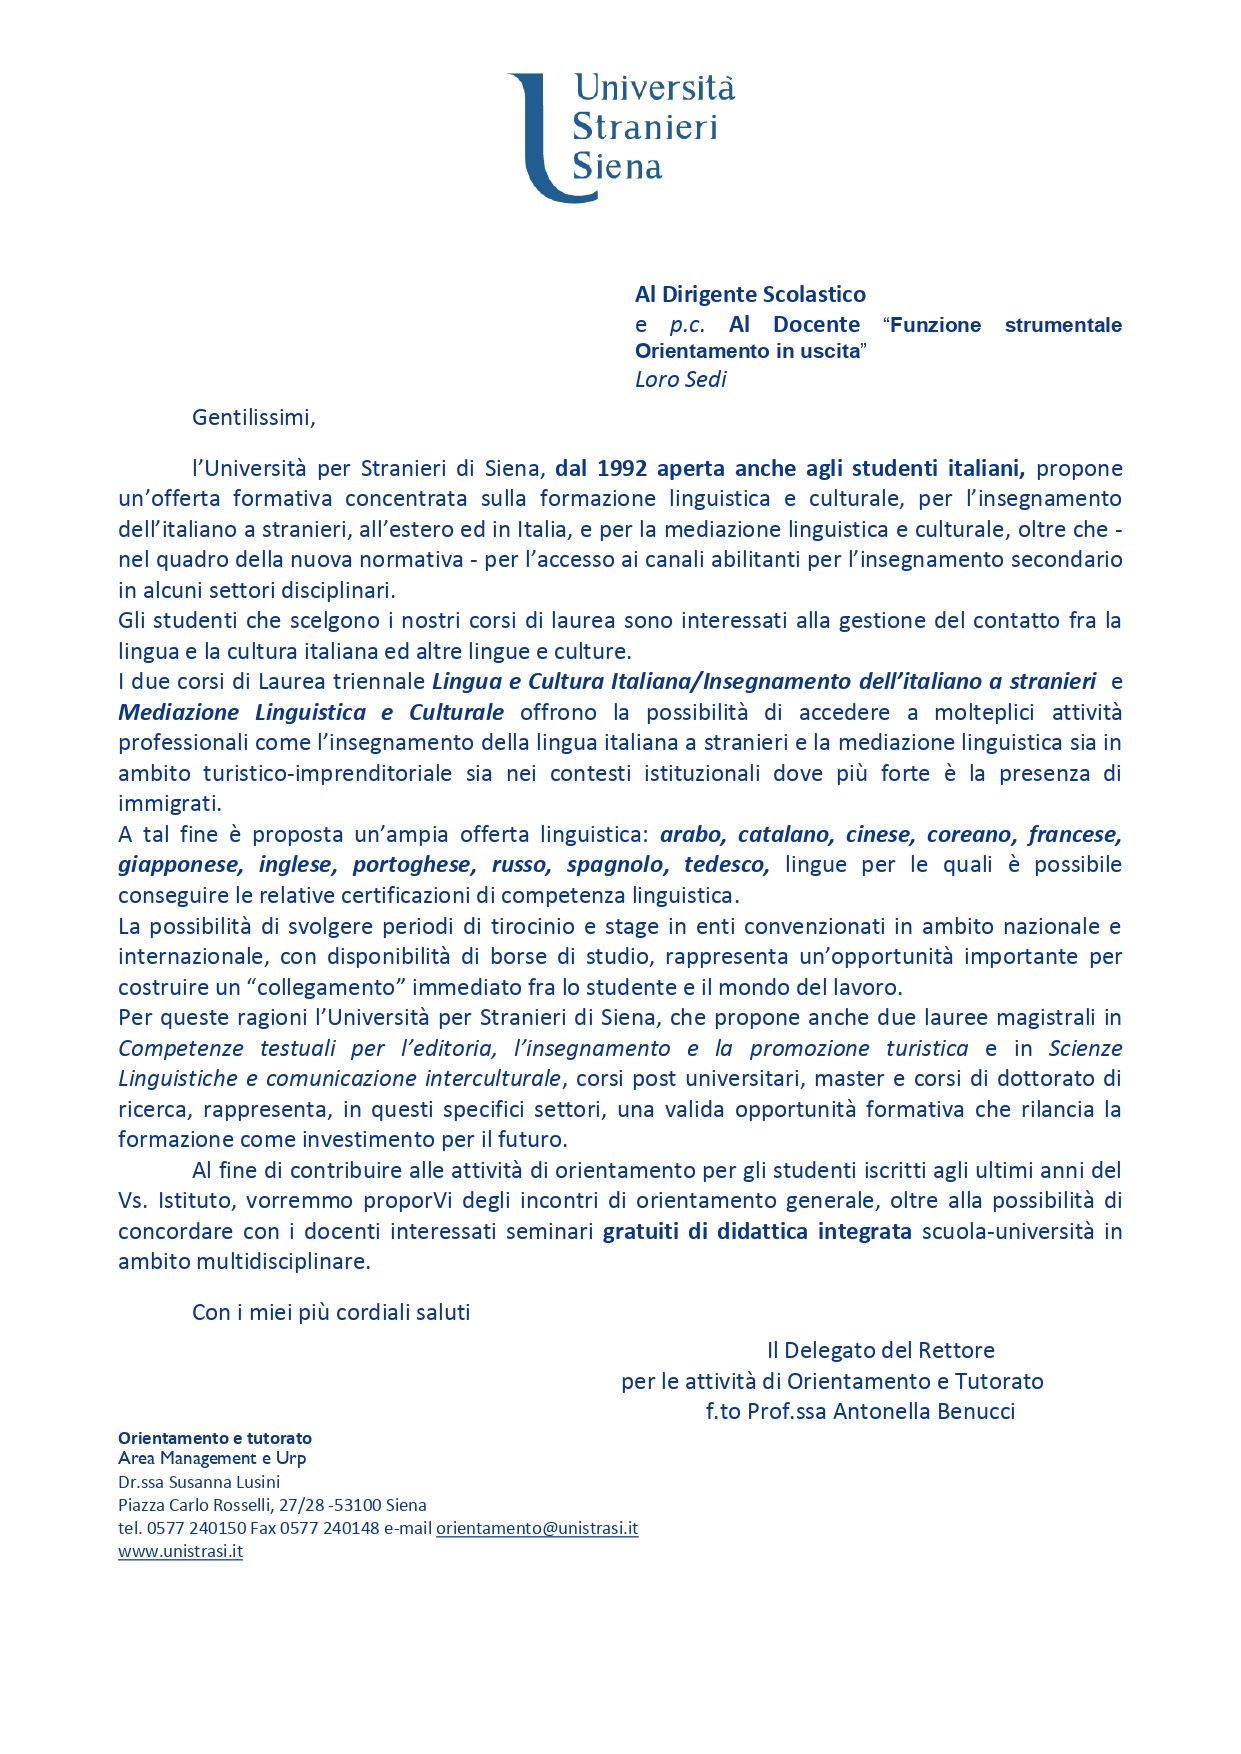 Università per Stranieri di Siena_ Proposte Orientamento AA 2019-2020_page-0001.jpg